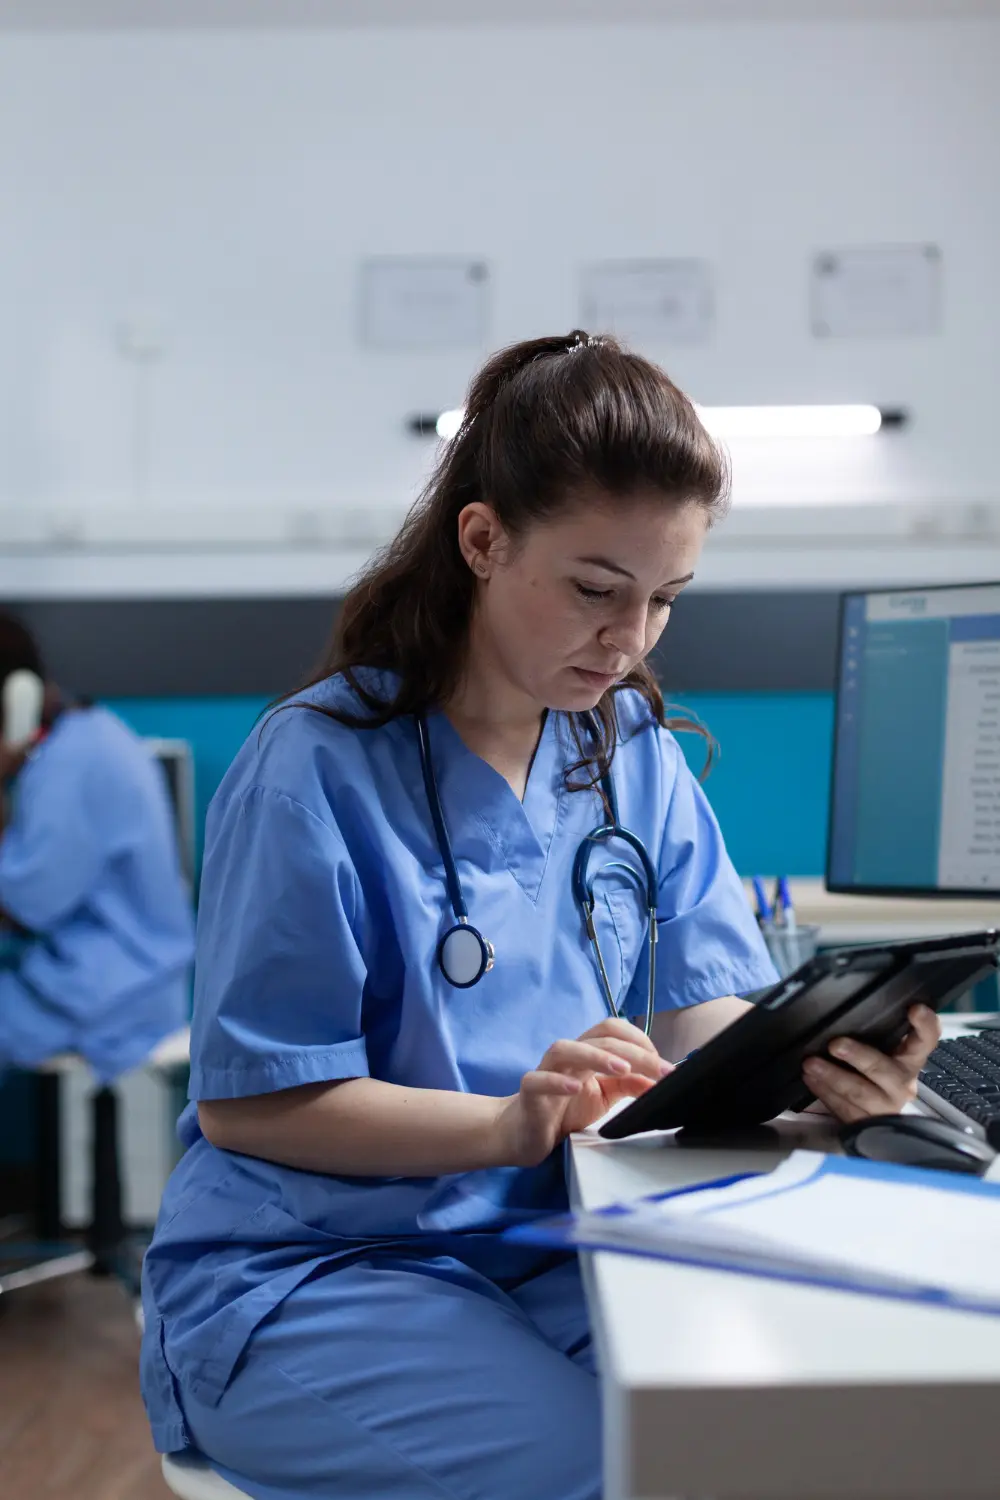 enfermera farmaceutica mirando tablet pc analizando experiencia enfermedad